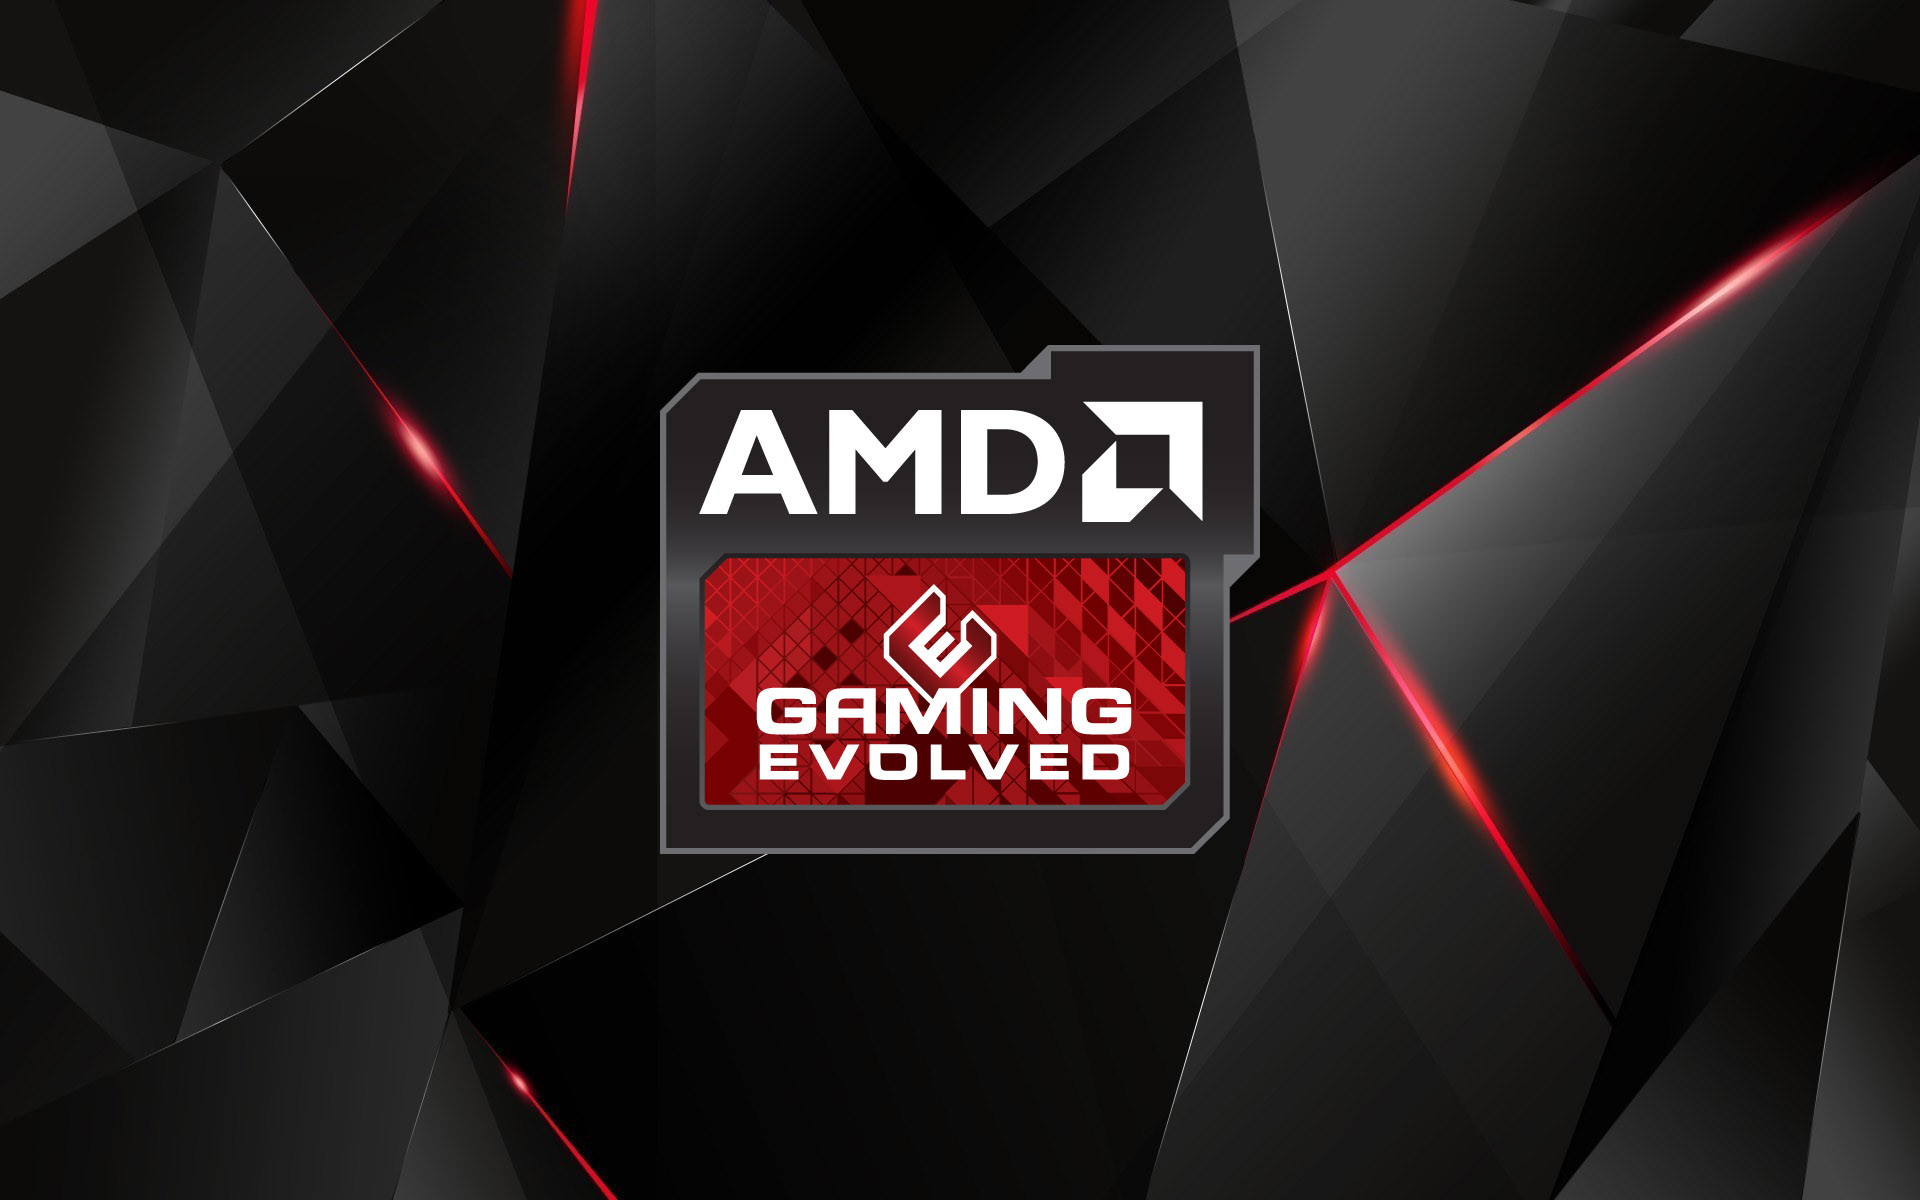 پیشرفت چشمگیر AMD